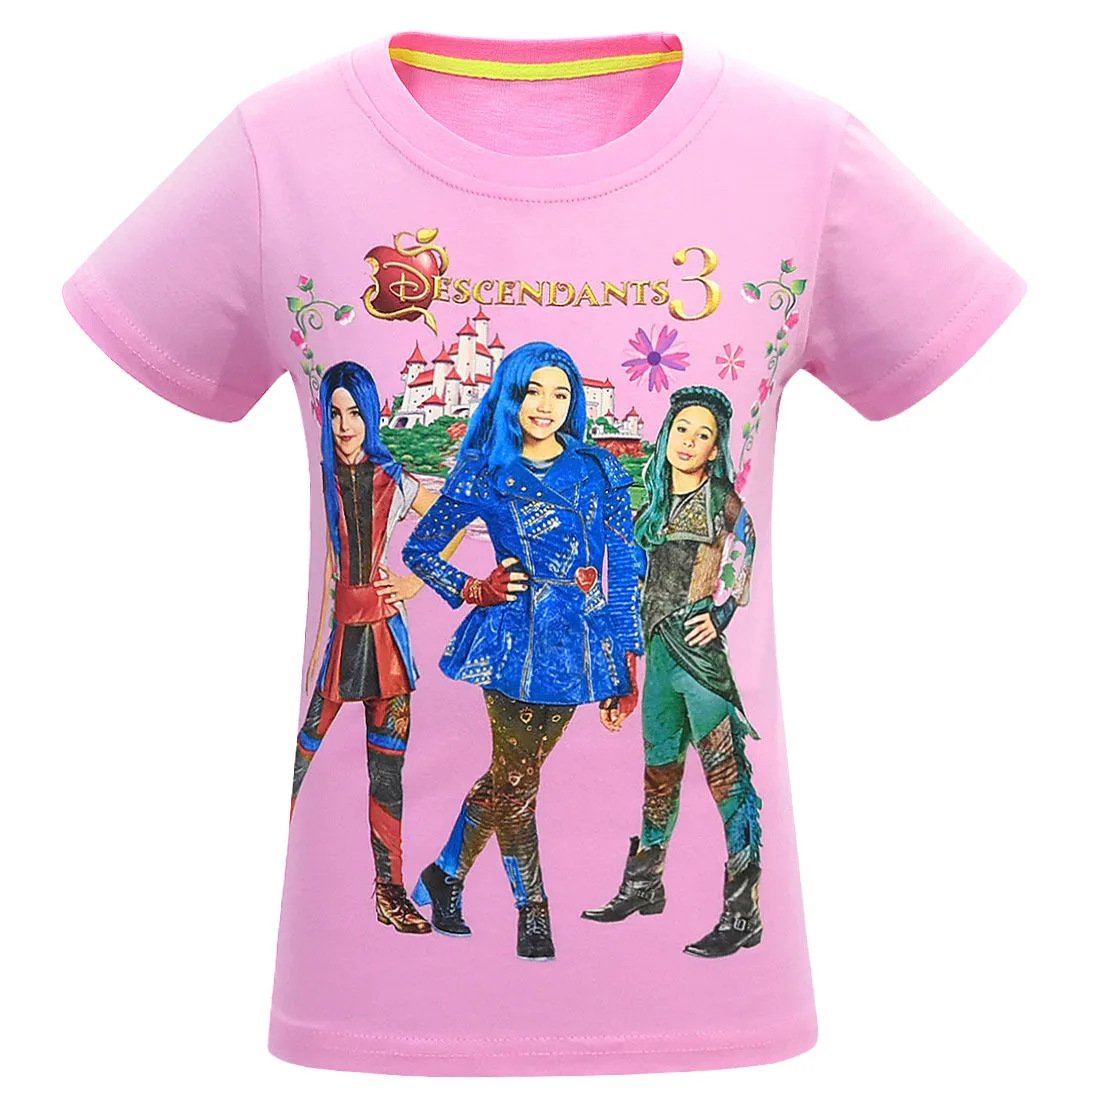 Одежда для девочек топ с короткими рукавами, футболка для маленьких девочек детская футболка детская одежда, футболка с надписью «queen of Mean Descendants 3» для детей